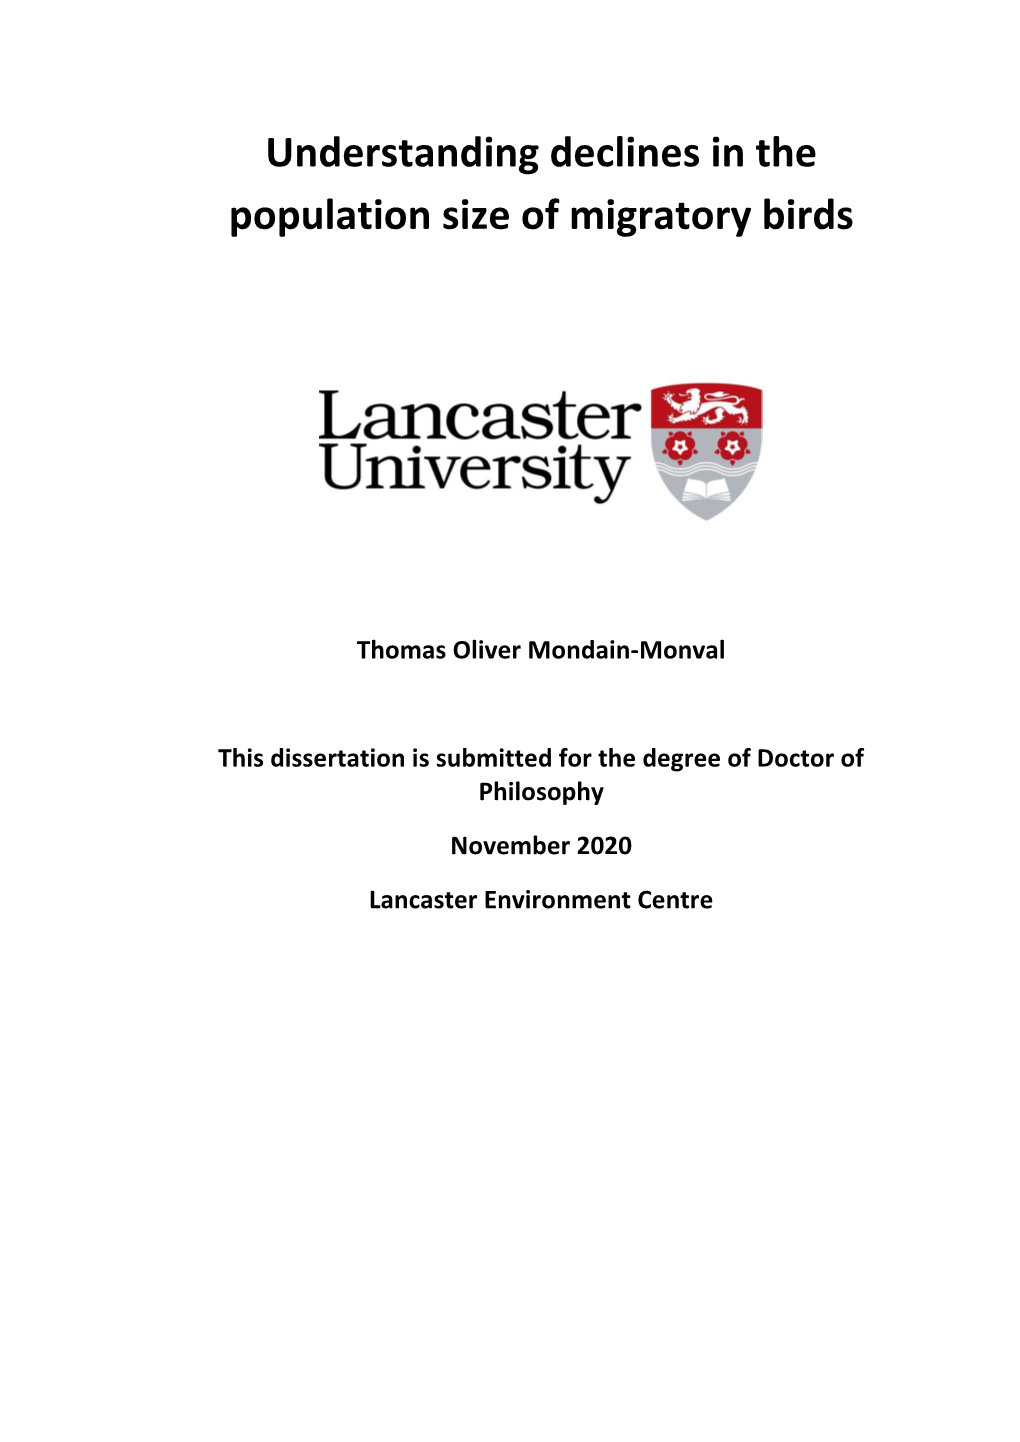 Understanding Declines in the Population Size of Migratory Birds